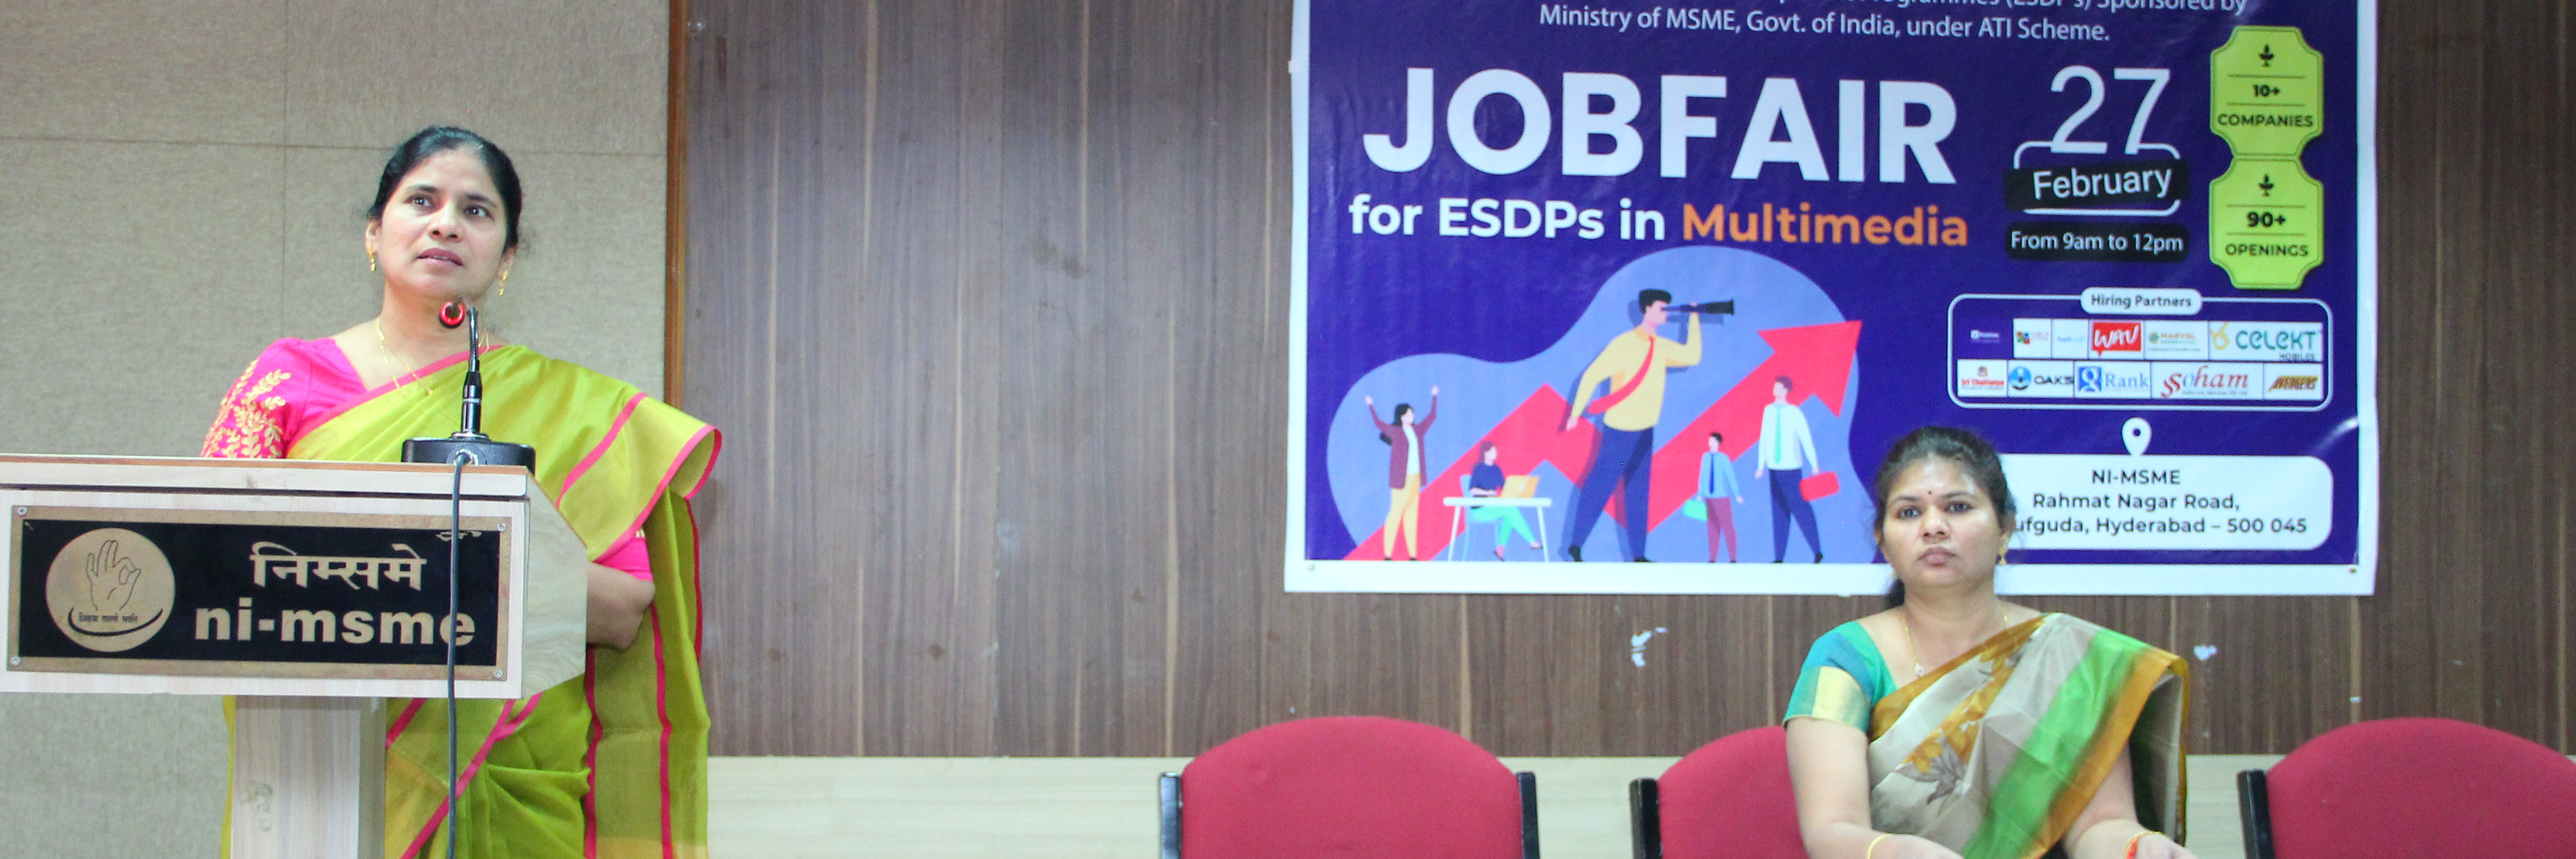 Job Fair for ESDPs Under ATI Scheme